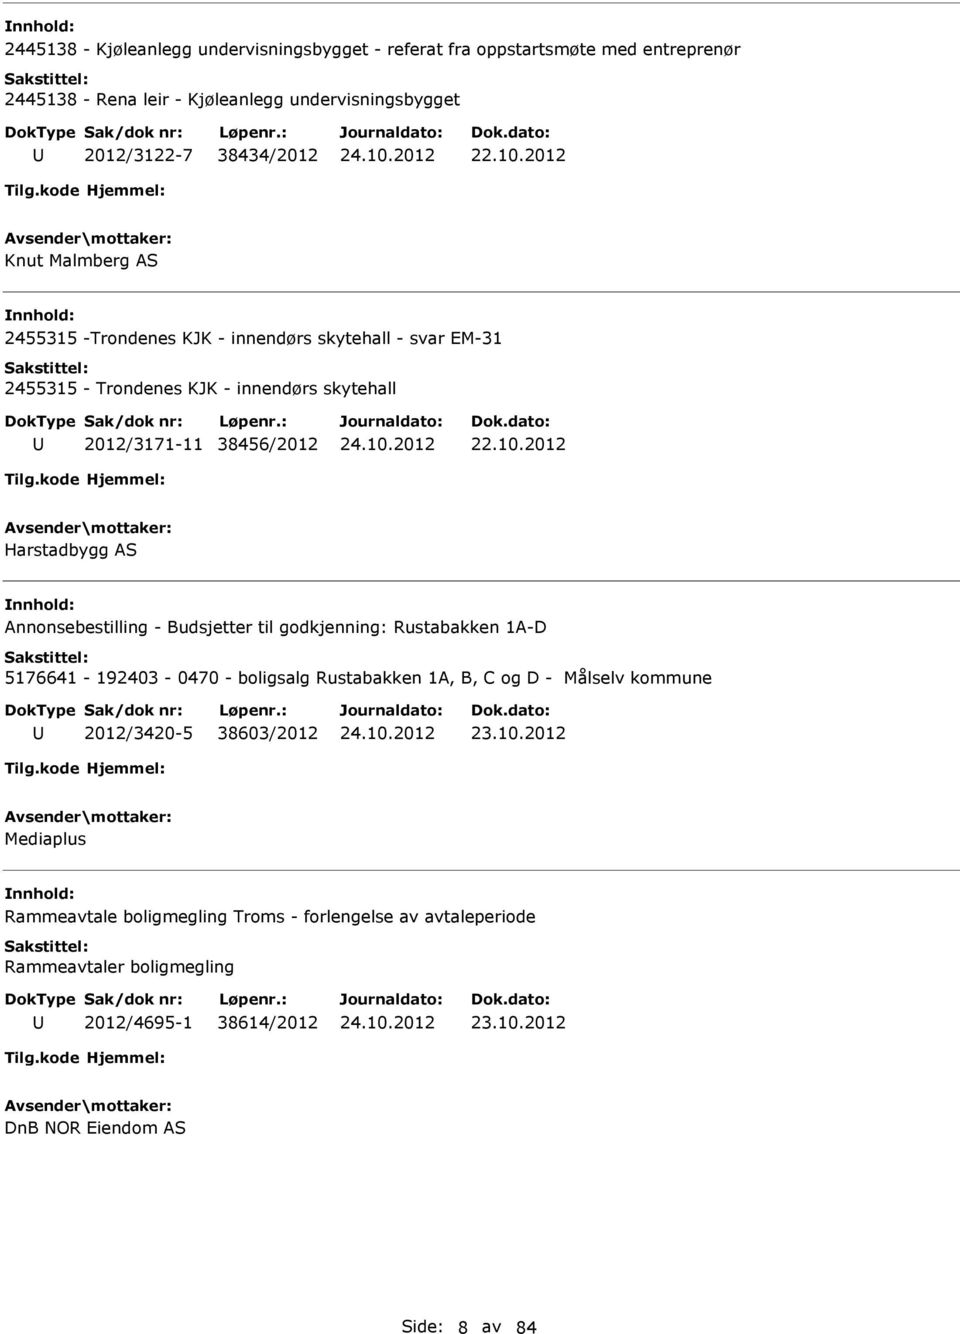 2012 Harstadbygg AS Annonsebestilling - Budsjetter til godkjenning: Rustabakken 1A-D 5176641-192403 - 0470 - boligsalg Rustabakken 1A, B, C og D - Målselv kommune